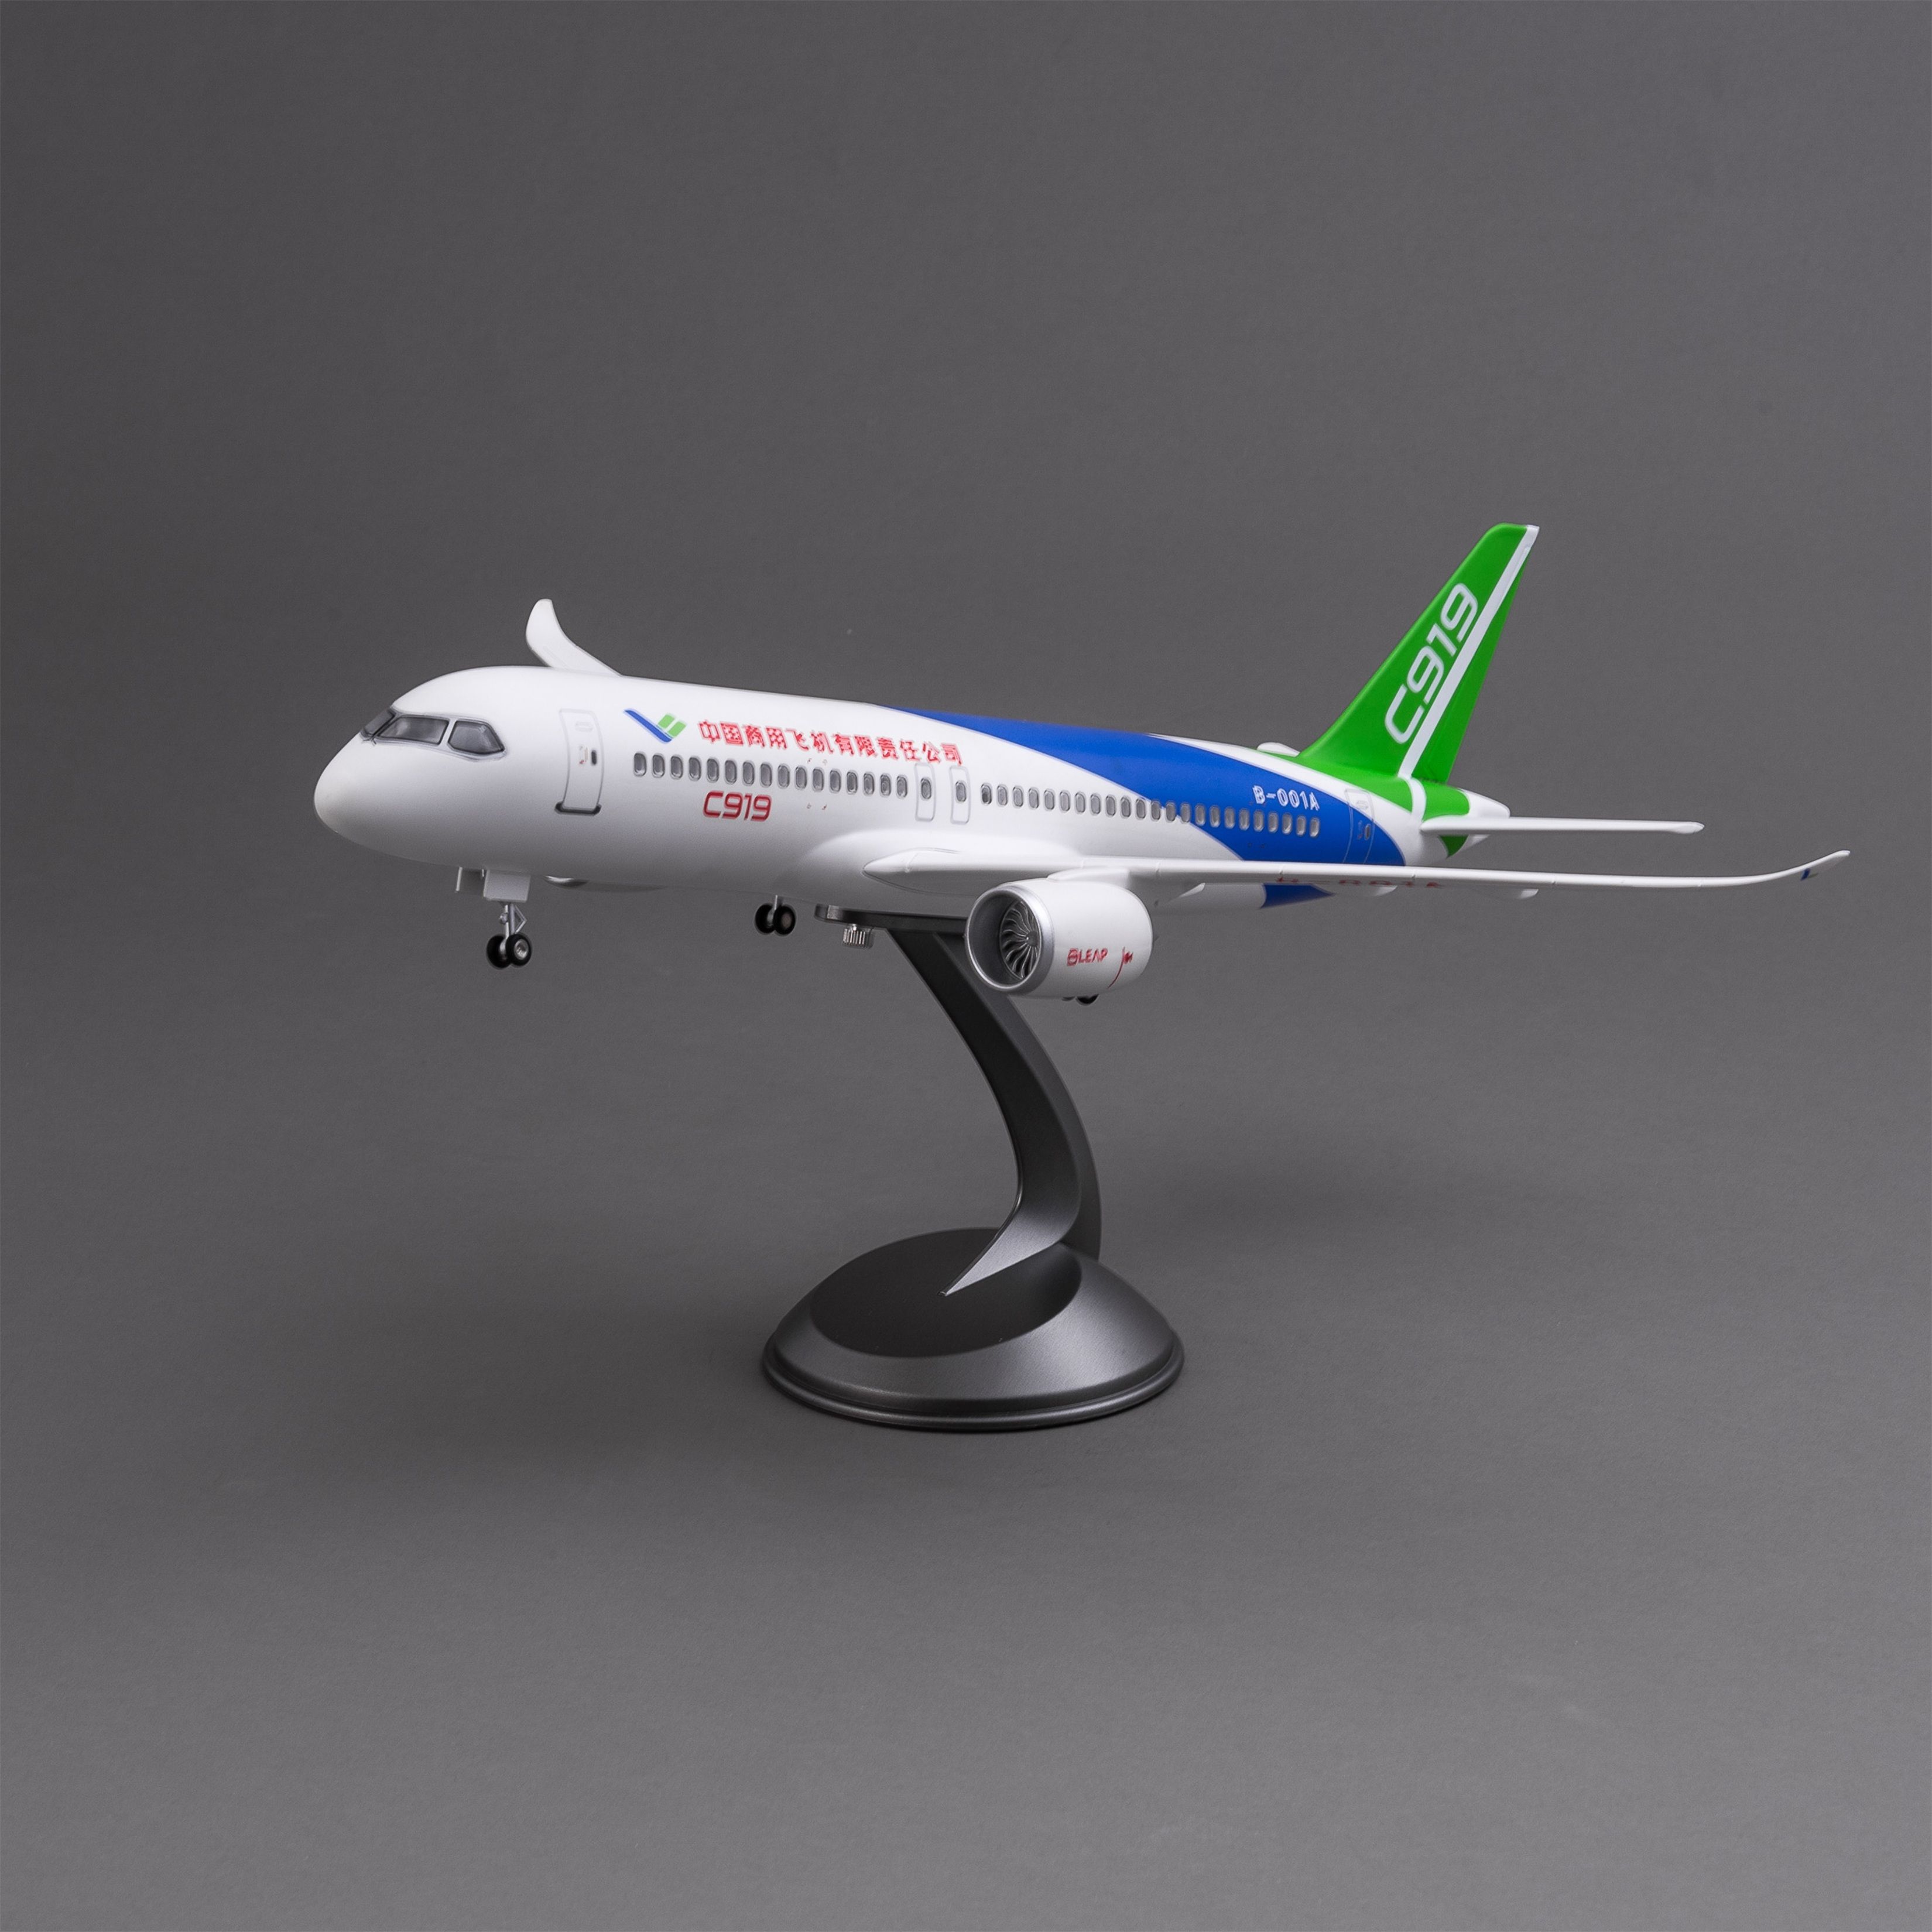 泡沫飞机/飞机模型/发光玩具/遥控泡沫飞机/C919产品图